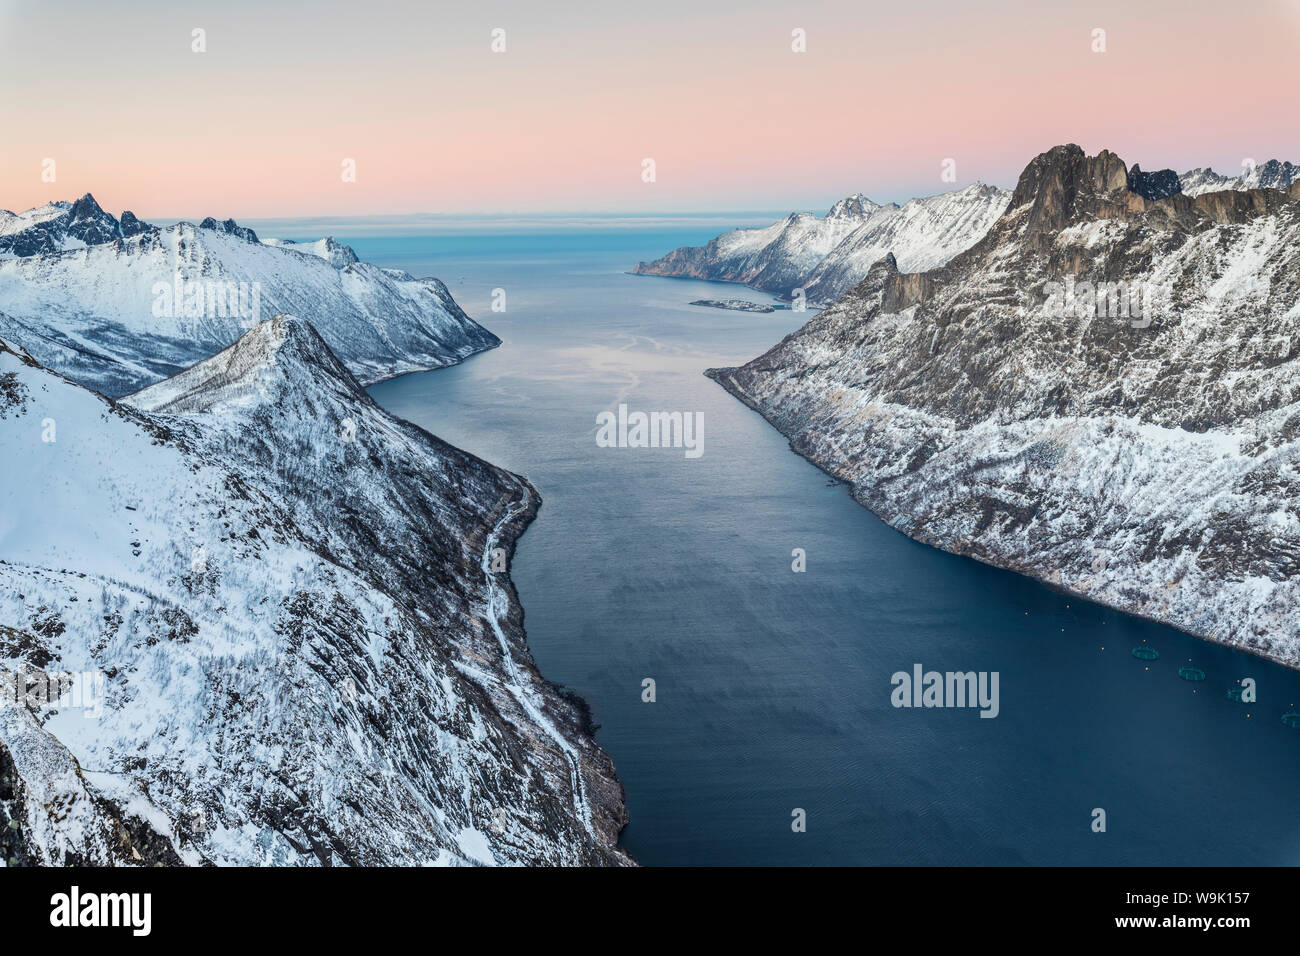 Vue de dessus les cimes enneigées entourant Fjordgard encadrée par la mer gelée au coucher du soleil, Ornfjorden, Senja, Troms, Norway, Scandinavia, Europe Banque D'Images